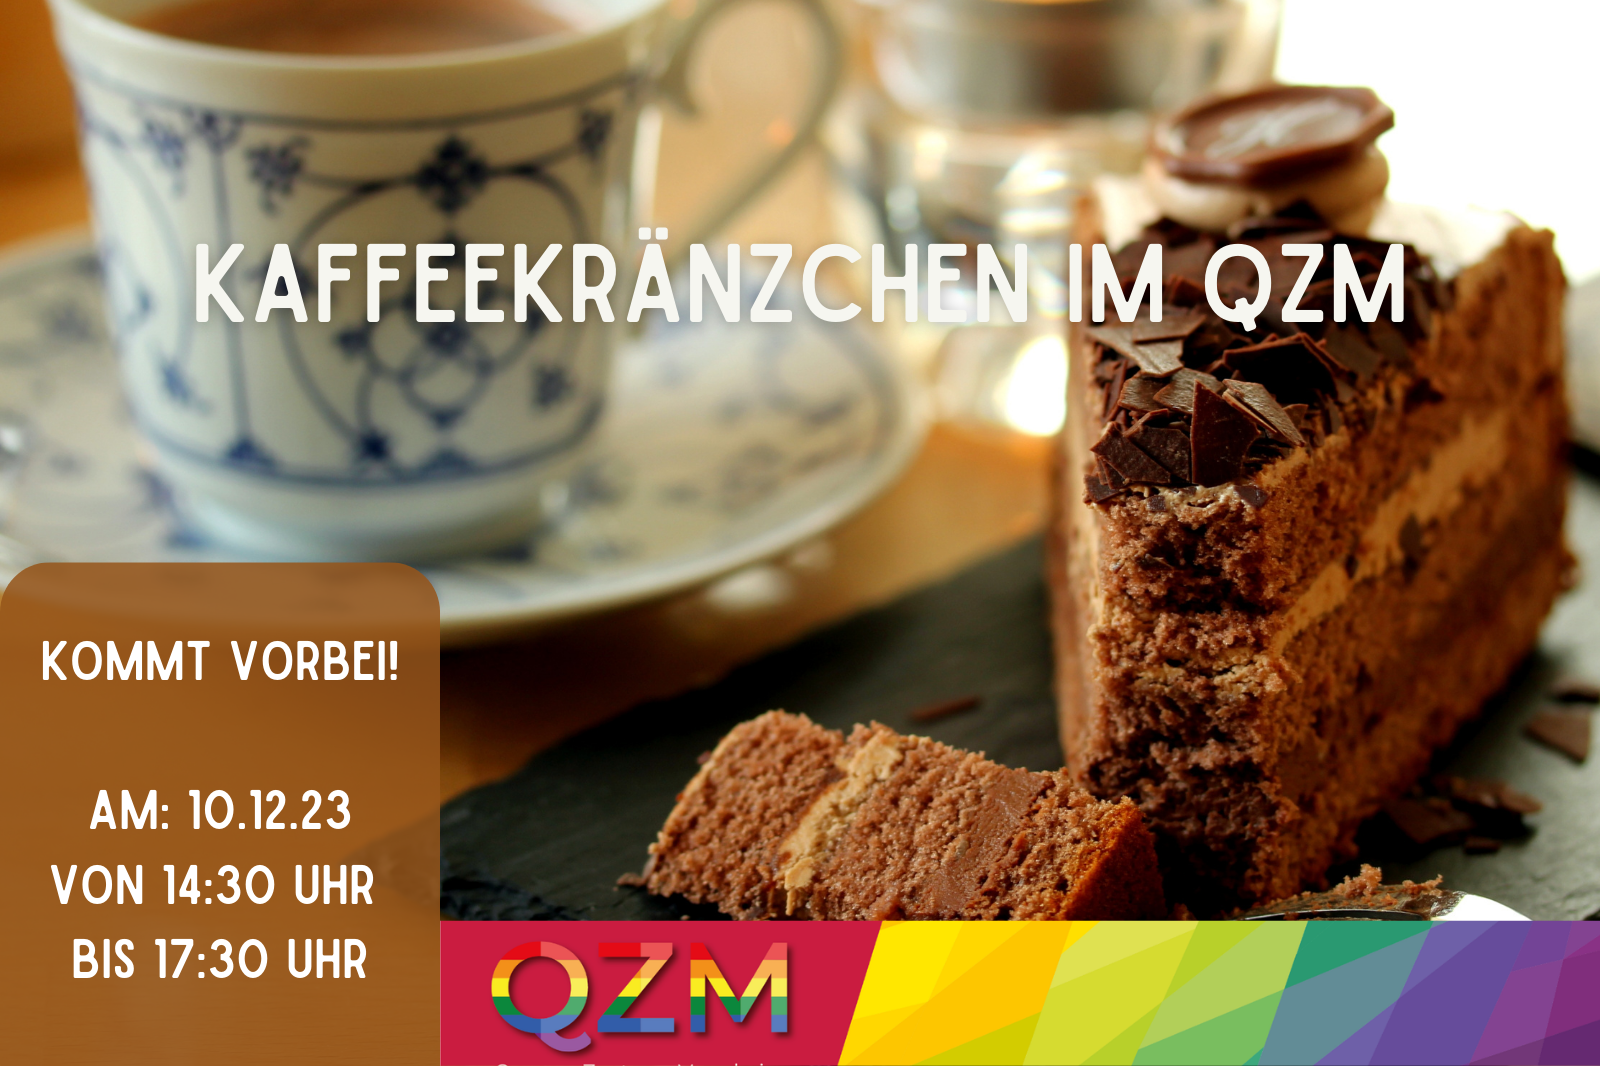 Im Hintergrund ist ein Bild von einer Tasse Kaffee und einem Stück Kuchen zu sehen. Ansonsten sind noch Datum und Uhrzeit und das QZM-Logo zu sehen.